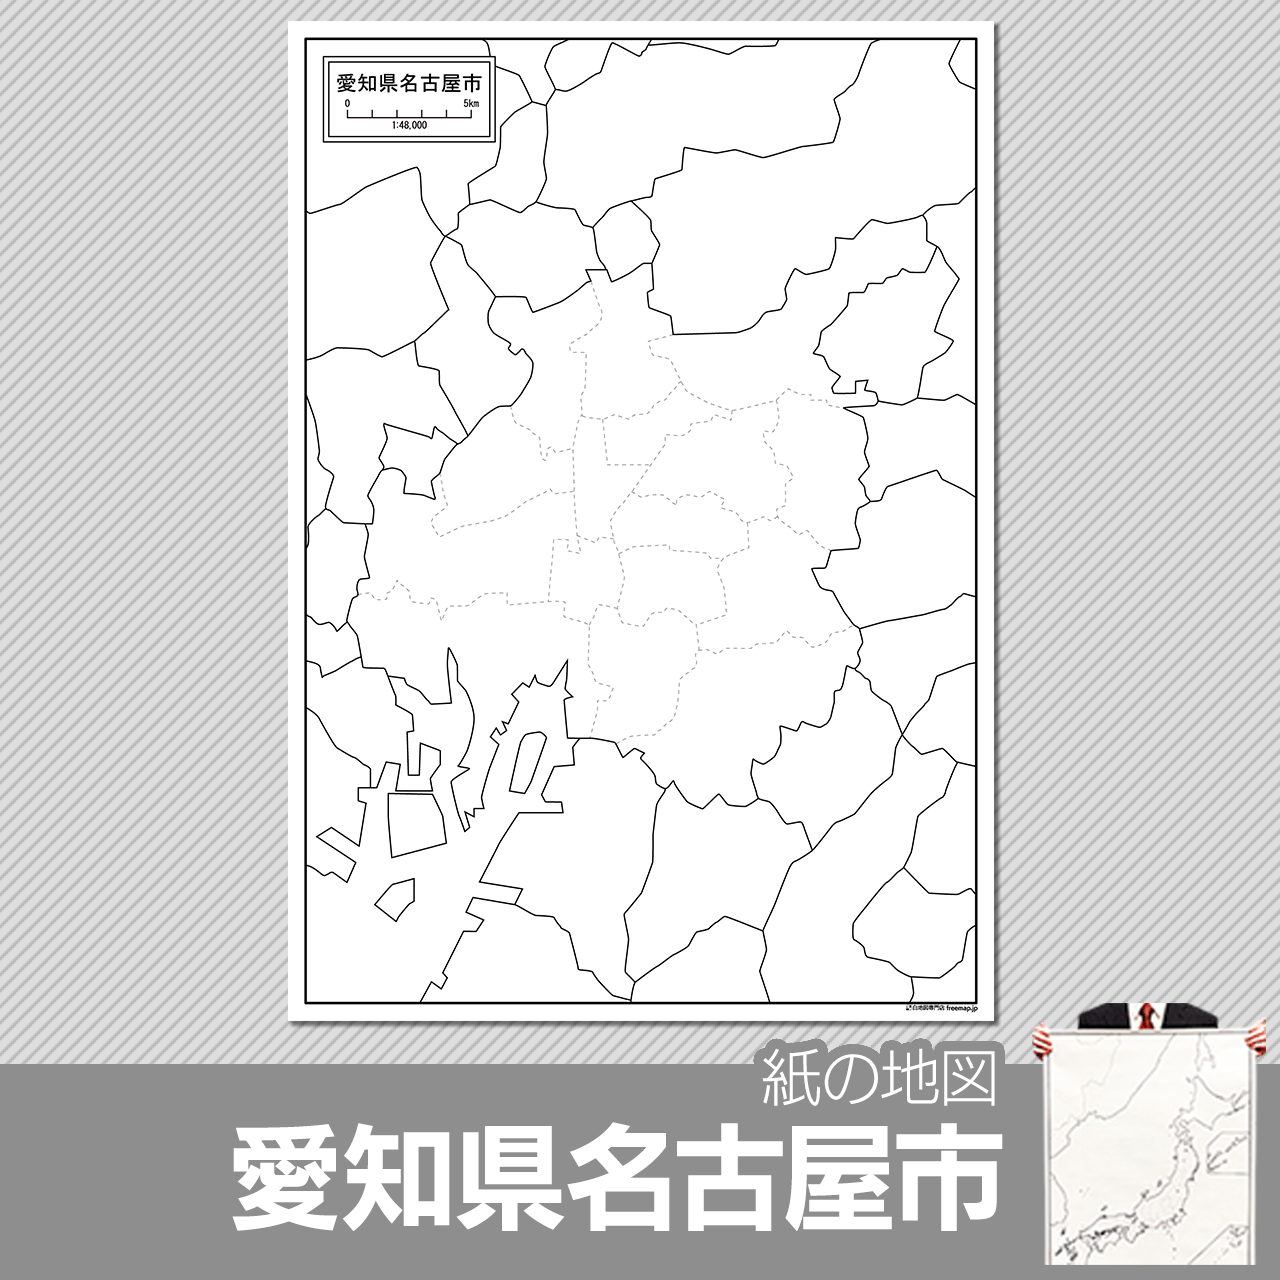 愛知県名古屋市の紙の白地図のサムネイル